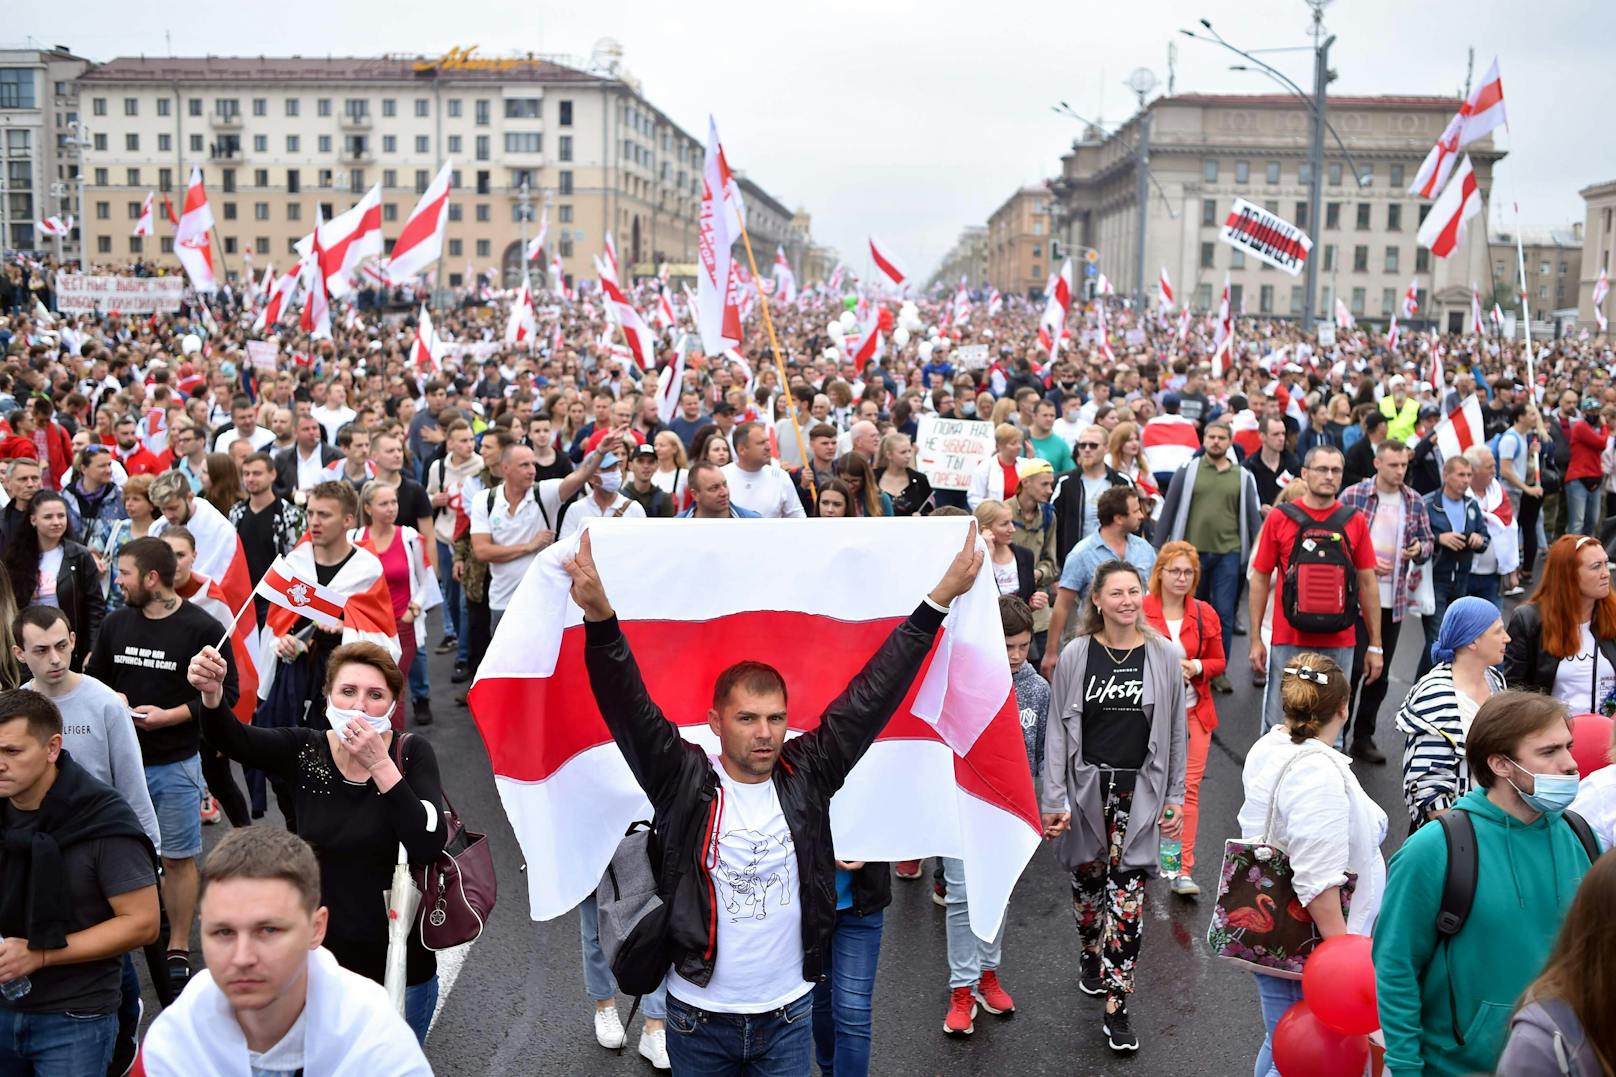 Viele der Demonstranten schwenkten die rot-weiße Fahne der Opposition und forderten in Sprechchören "Freiheit“. 